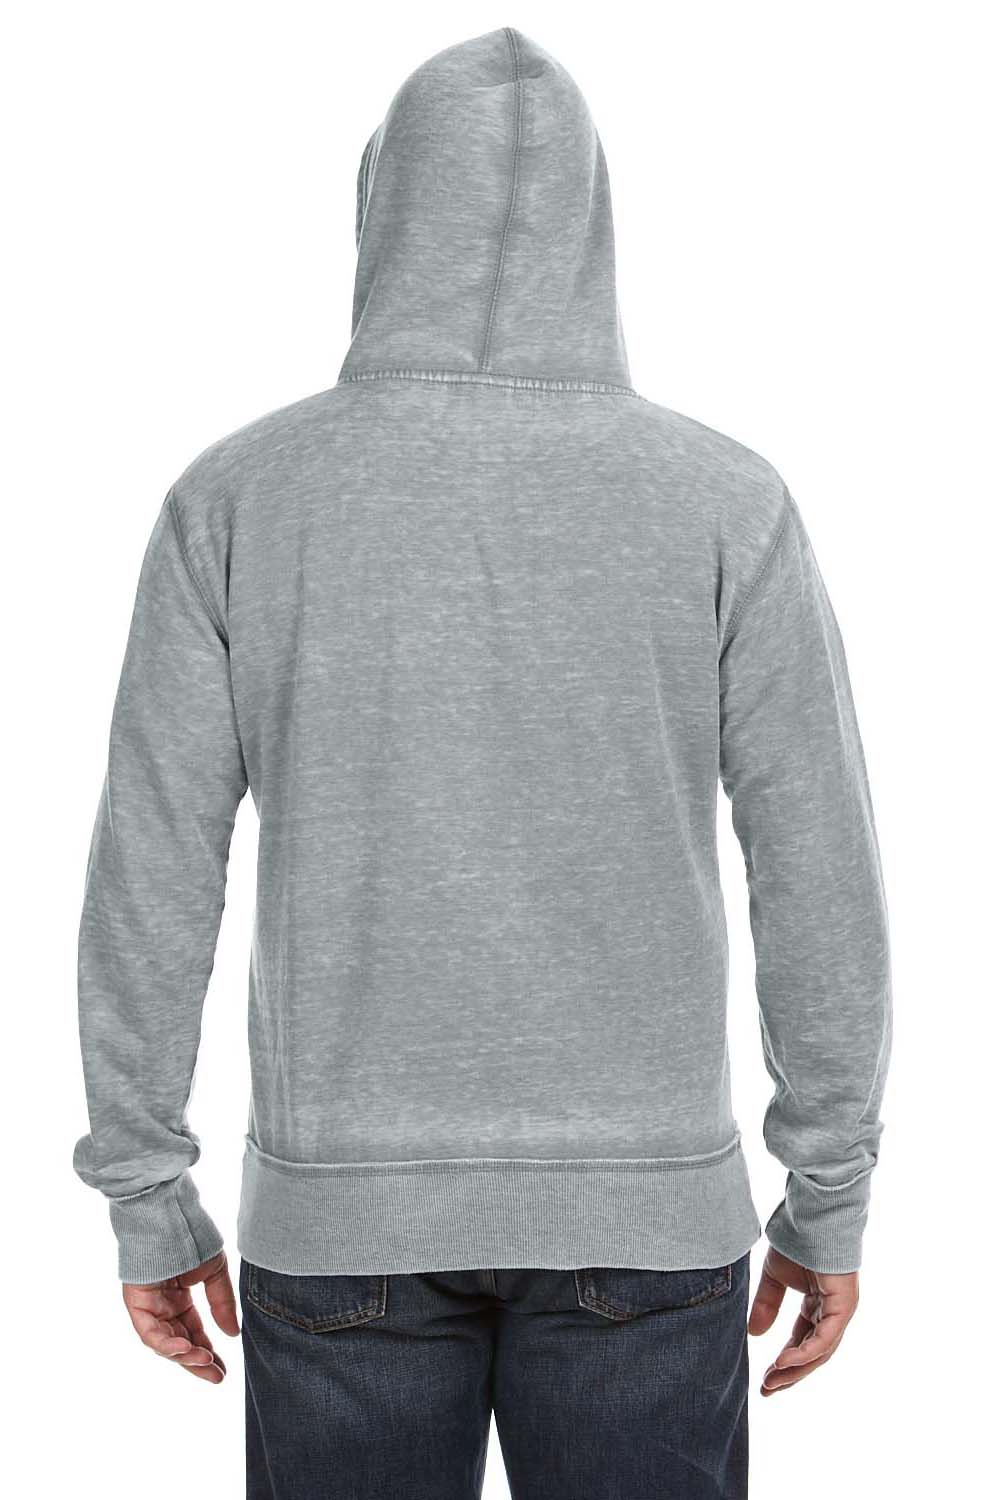 J America JA8916 Mens Vintage Zen Burnout Fleece Full Zip Hooded Sweatshirt Hoodie Cement Grey Back